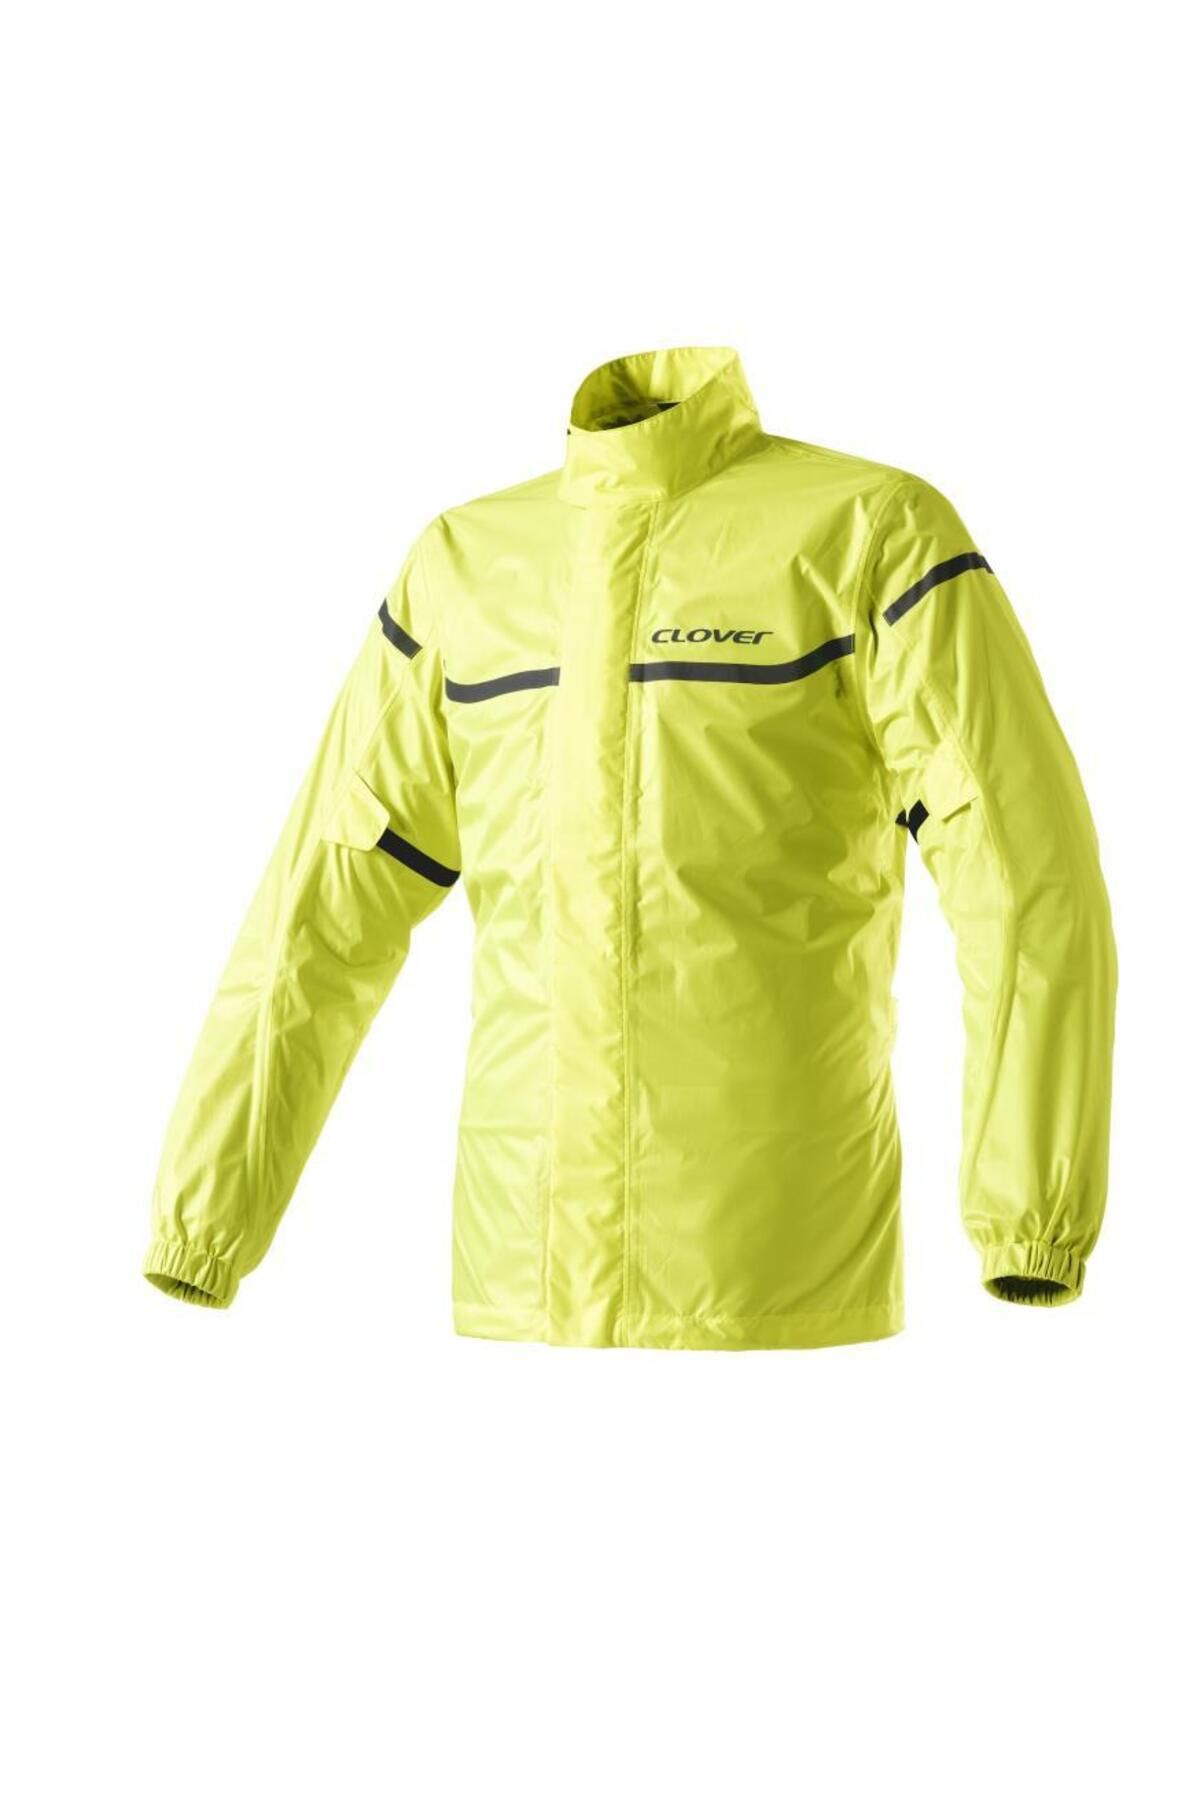 Clover Wet Jacket Pro Wp Üst Yağmurluk Sarı